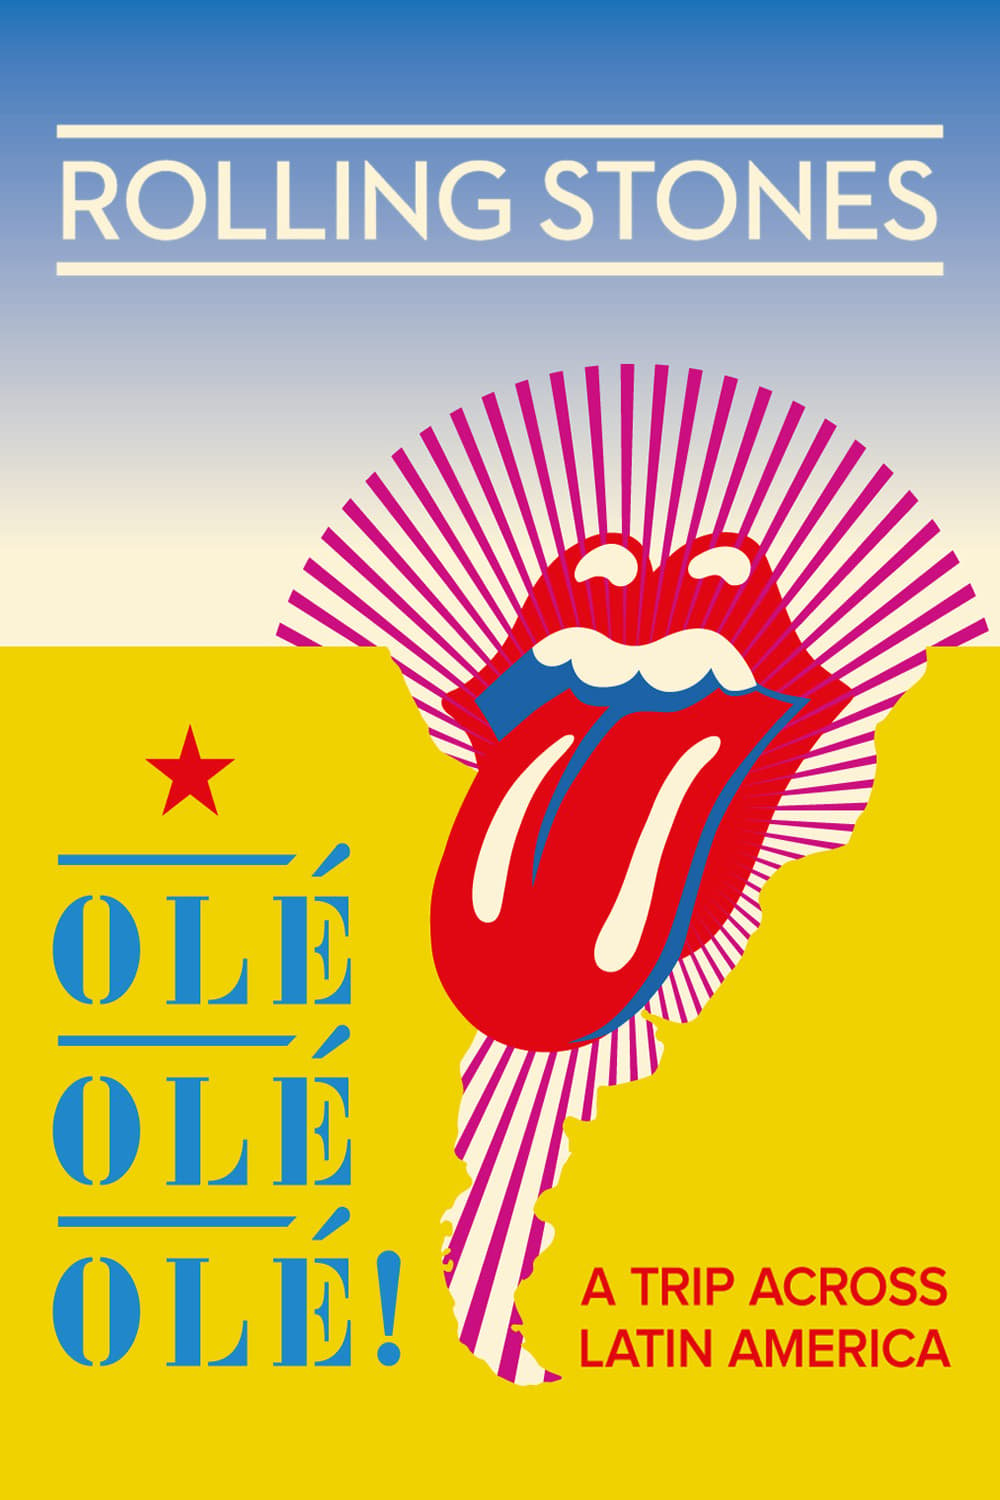 The Rolling Stones: Olé Olé Olé! – A Trip Across Latin America (2016)